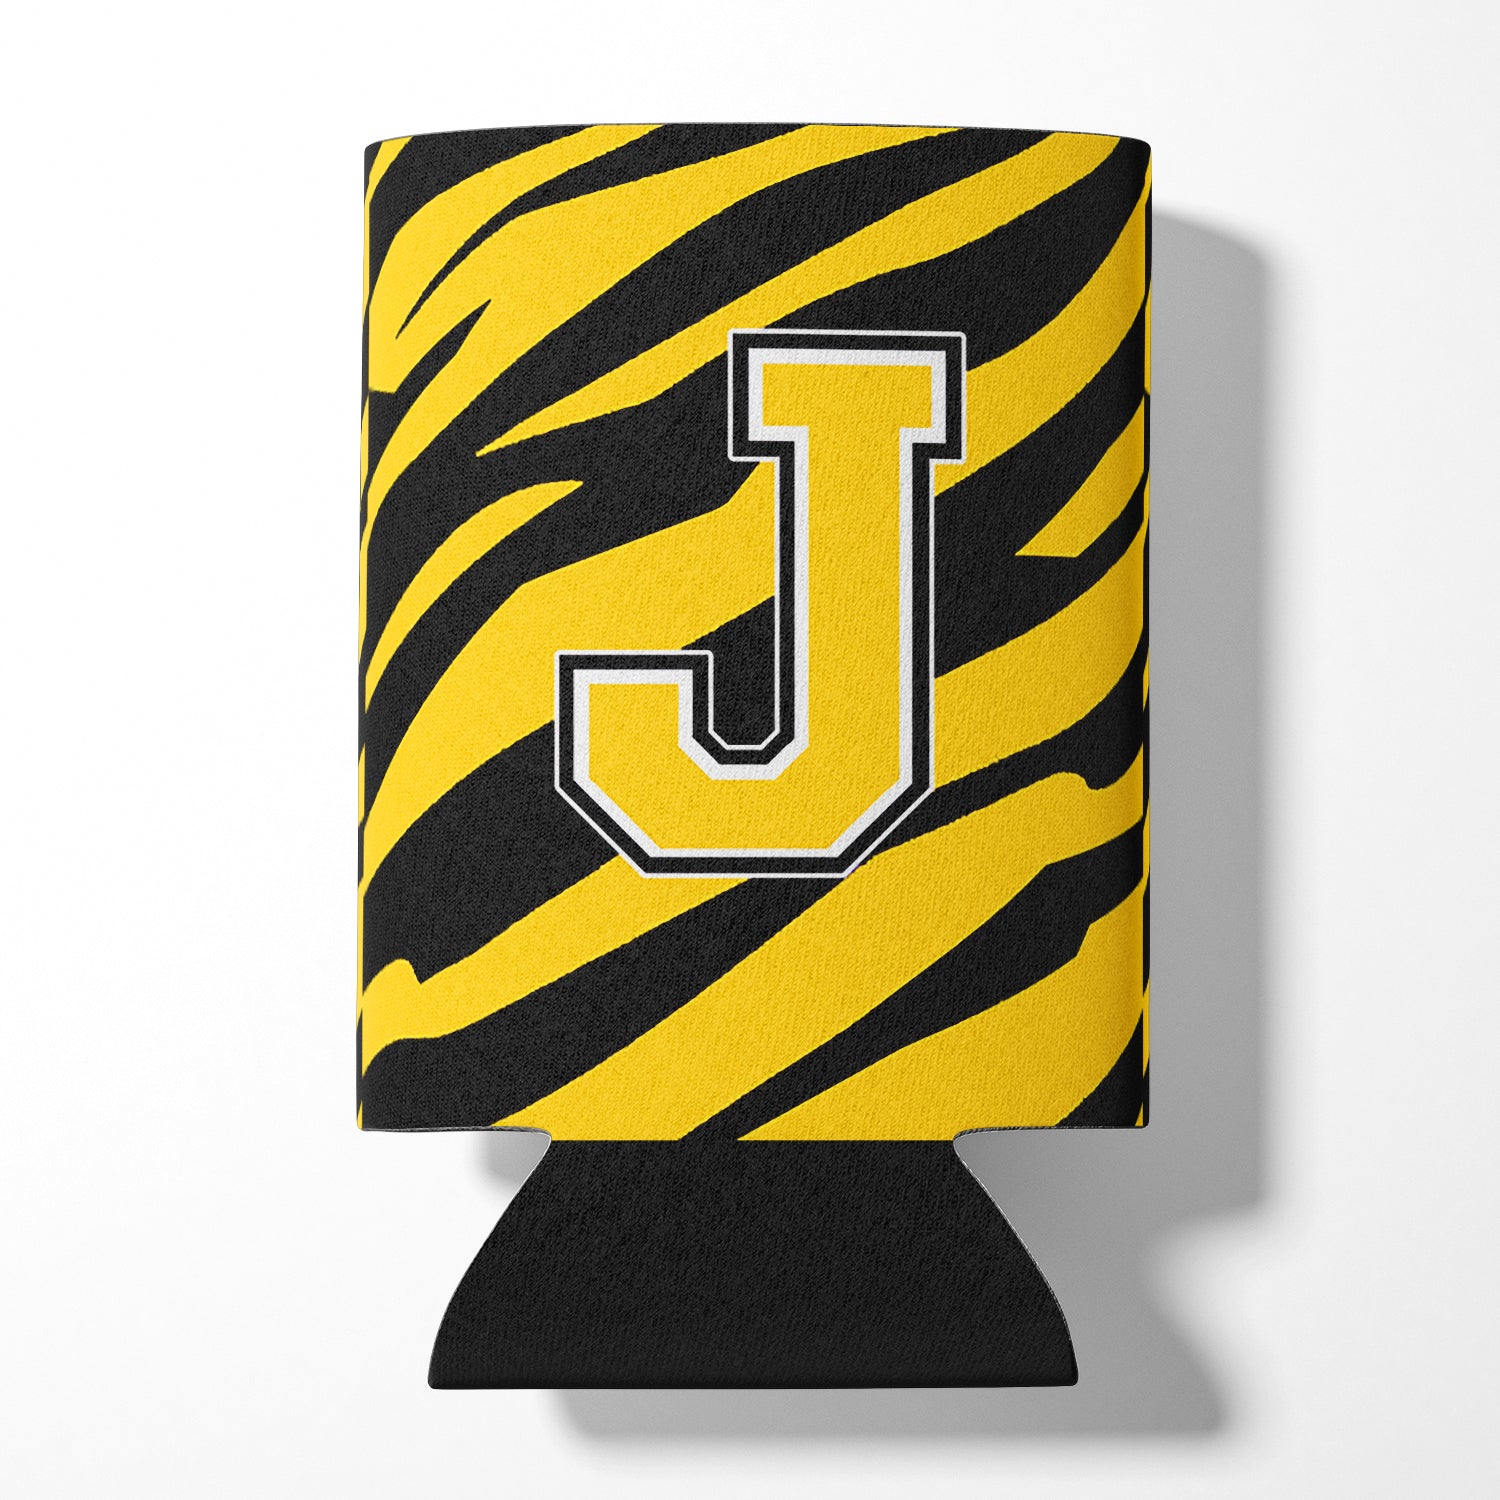 Lettre J monogramme initial - Tiger Stripe - Black Gold Can Beverage Insulator Hugger